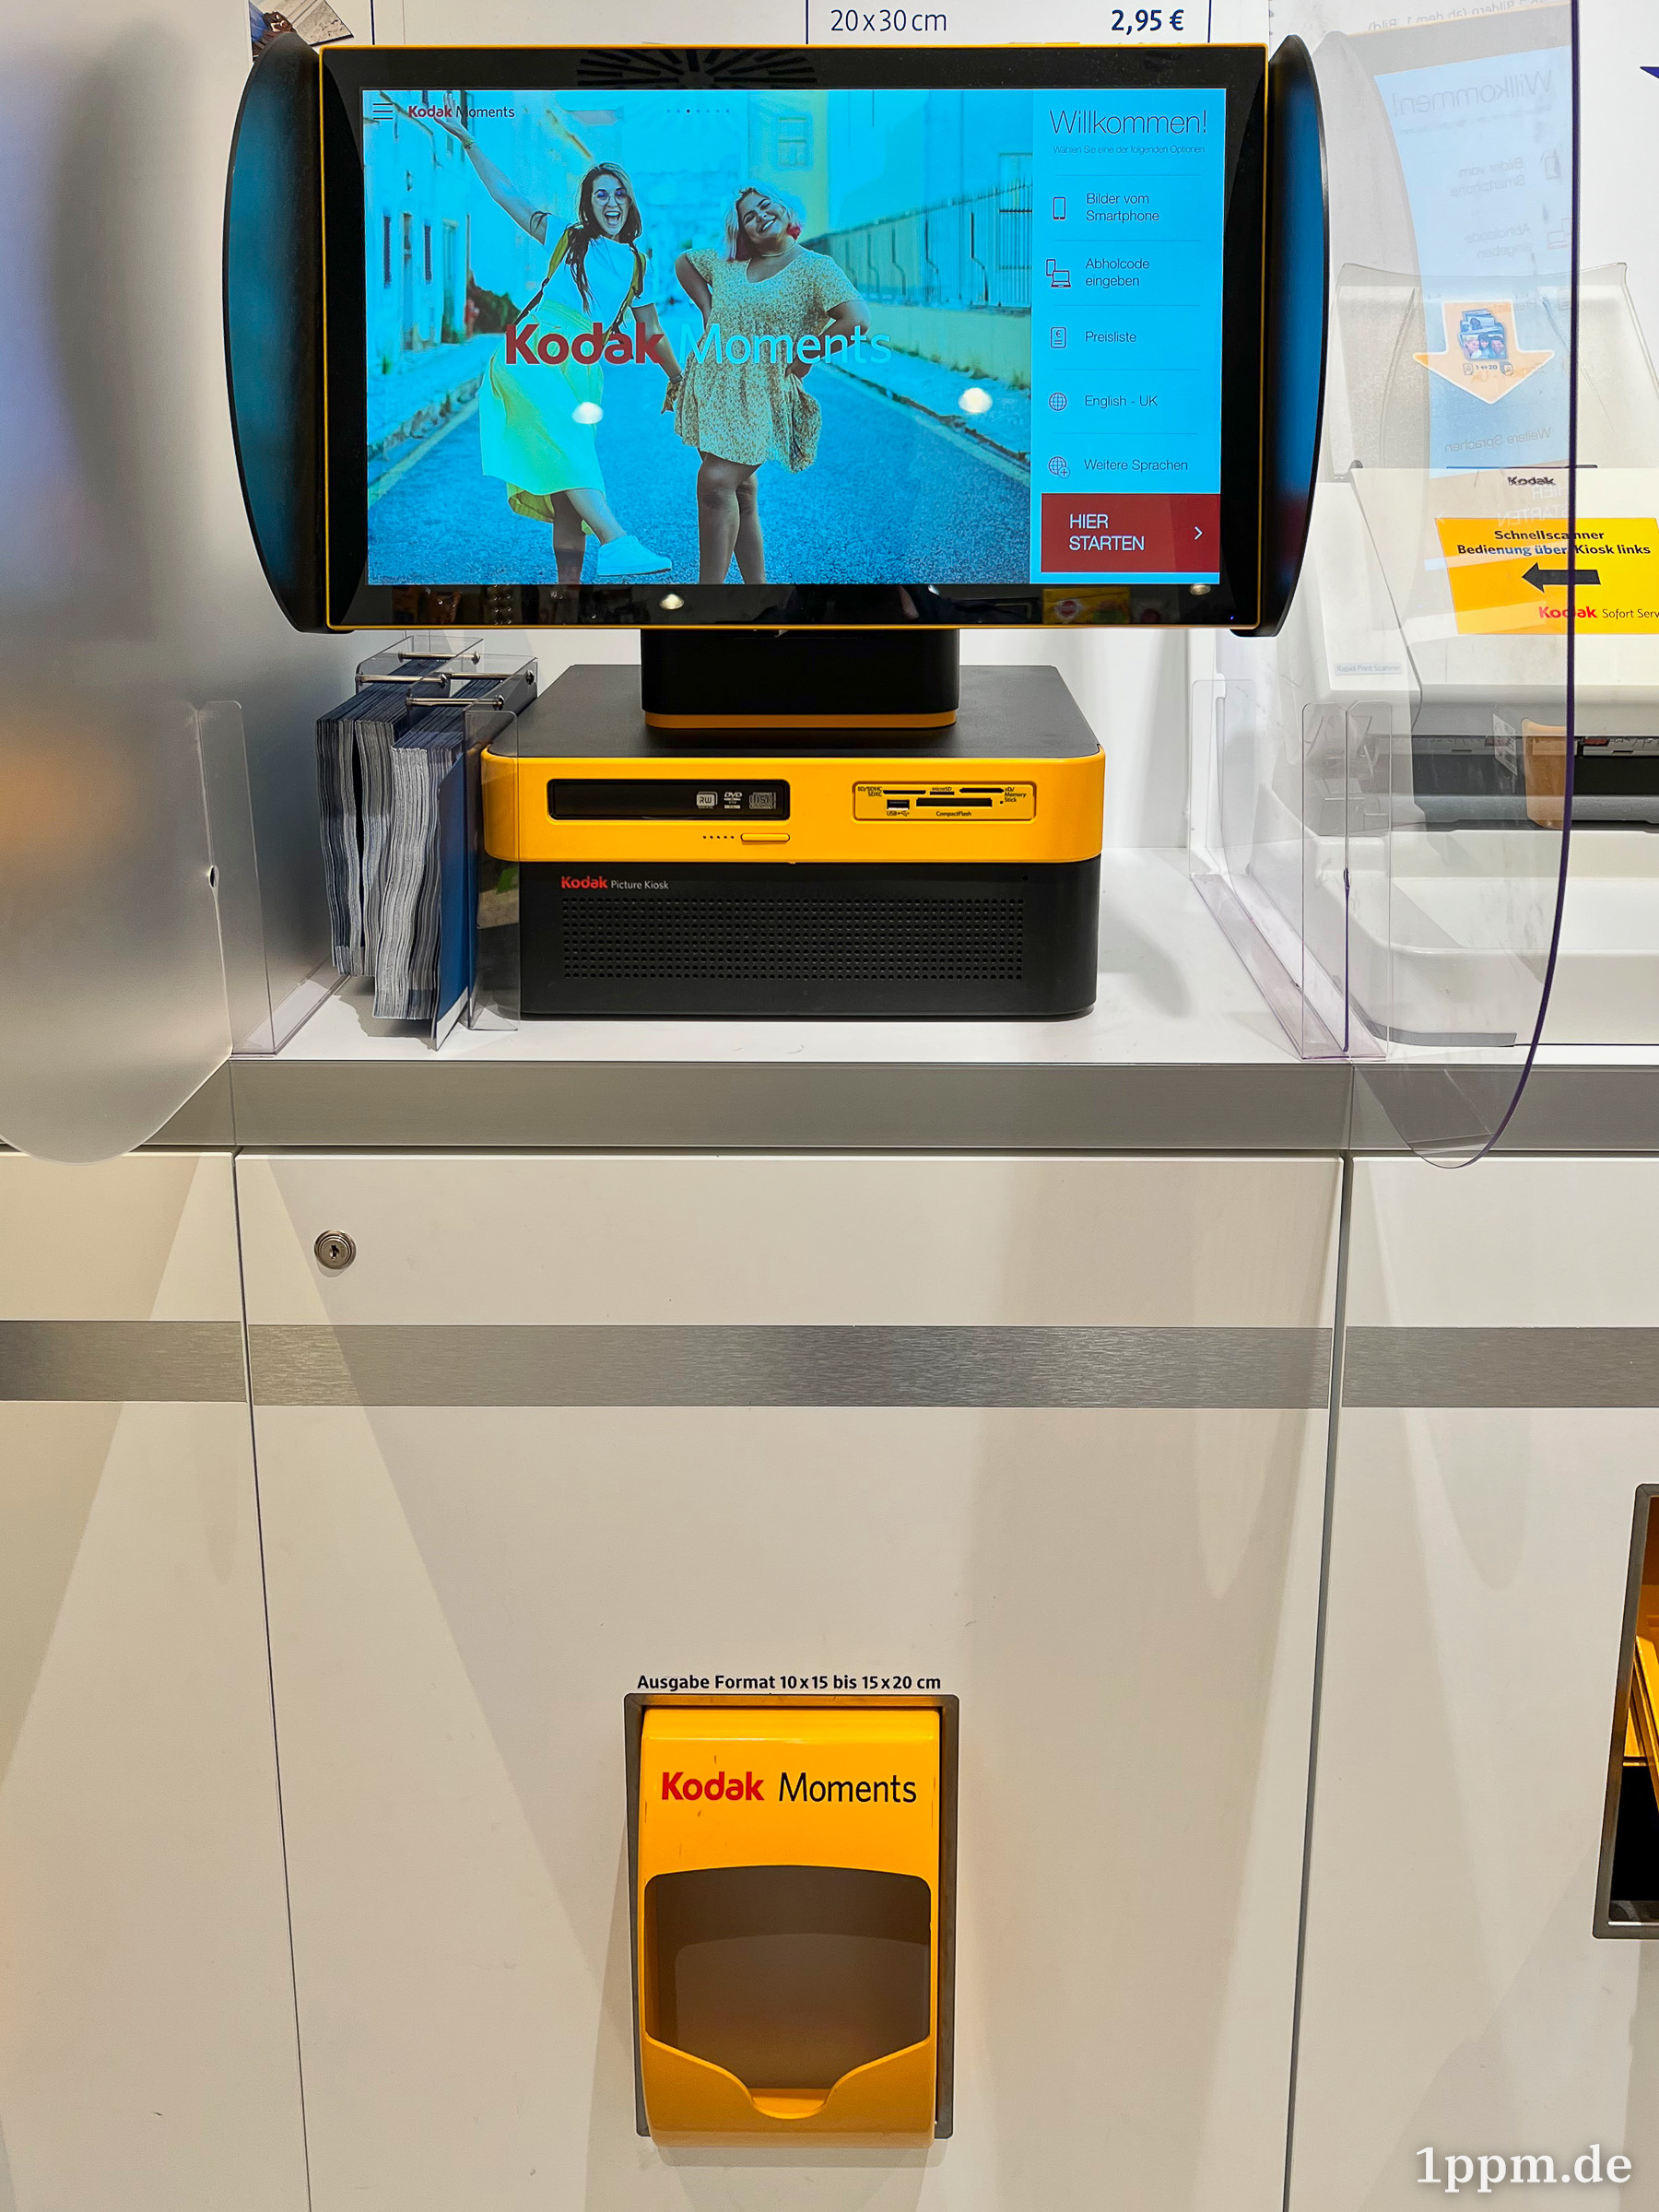 Ein großer Bildschirm auf einem gelb-schwarzen Kasten steht auf einem Schrank. Der Schrank hat unten ein gelbes, mit „Kodak Moments“ beschriftetes Ausgabefach.